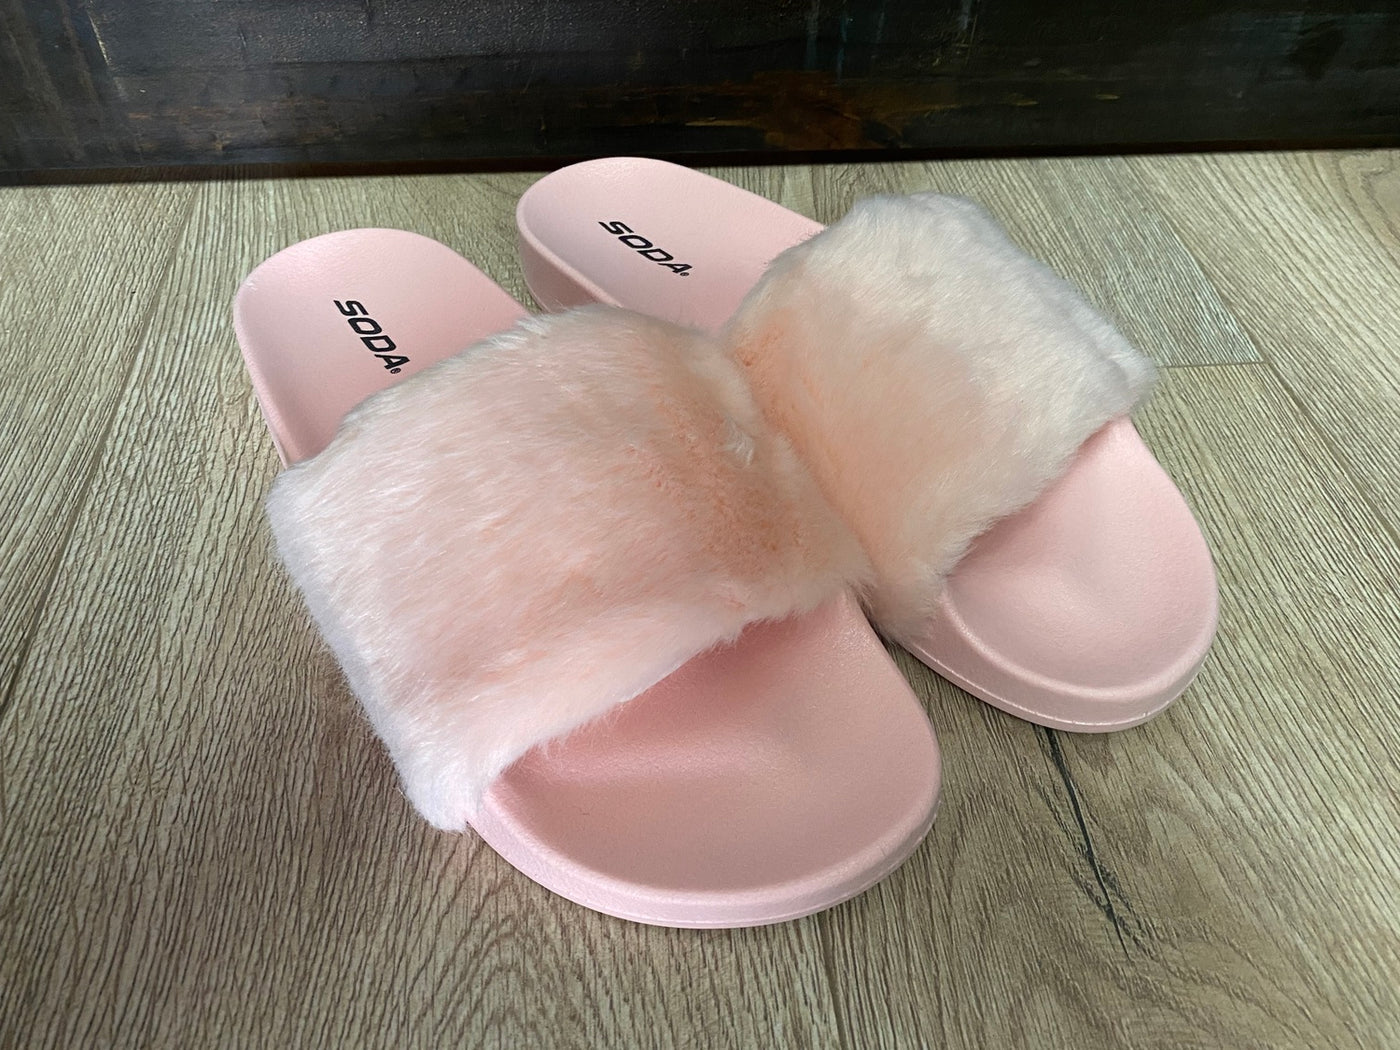 Ladies Multi-Color Faux Fur Slide Sandals